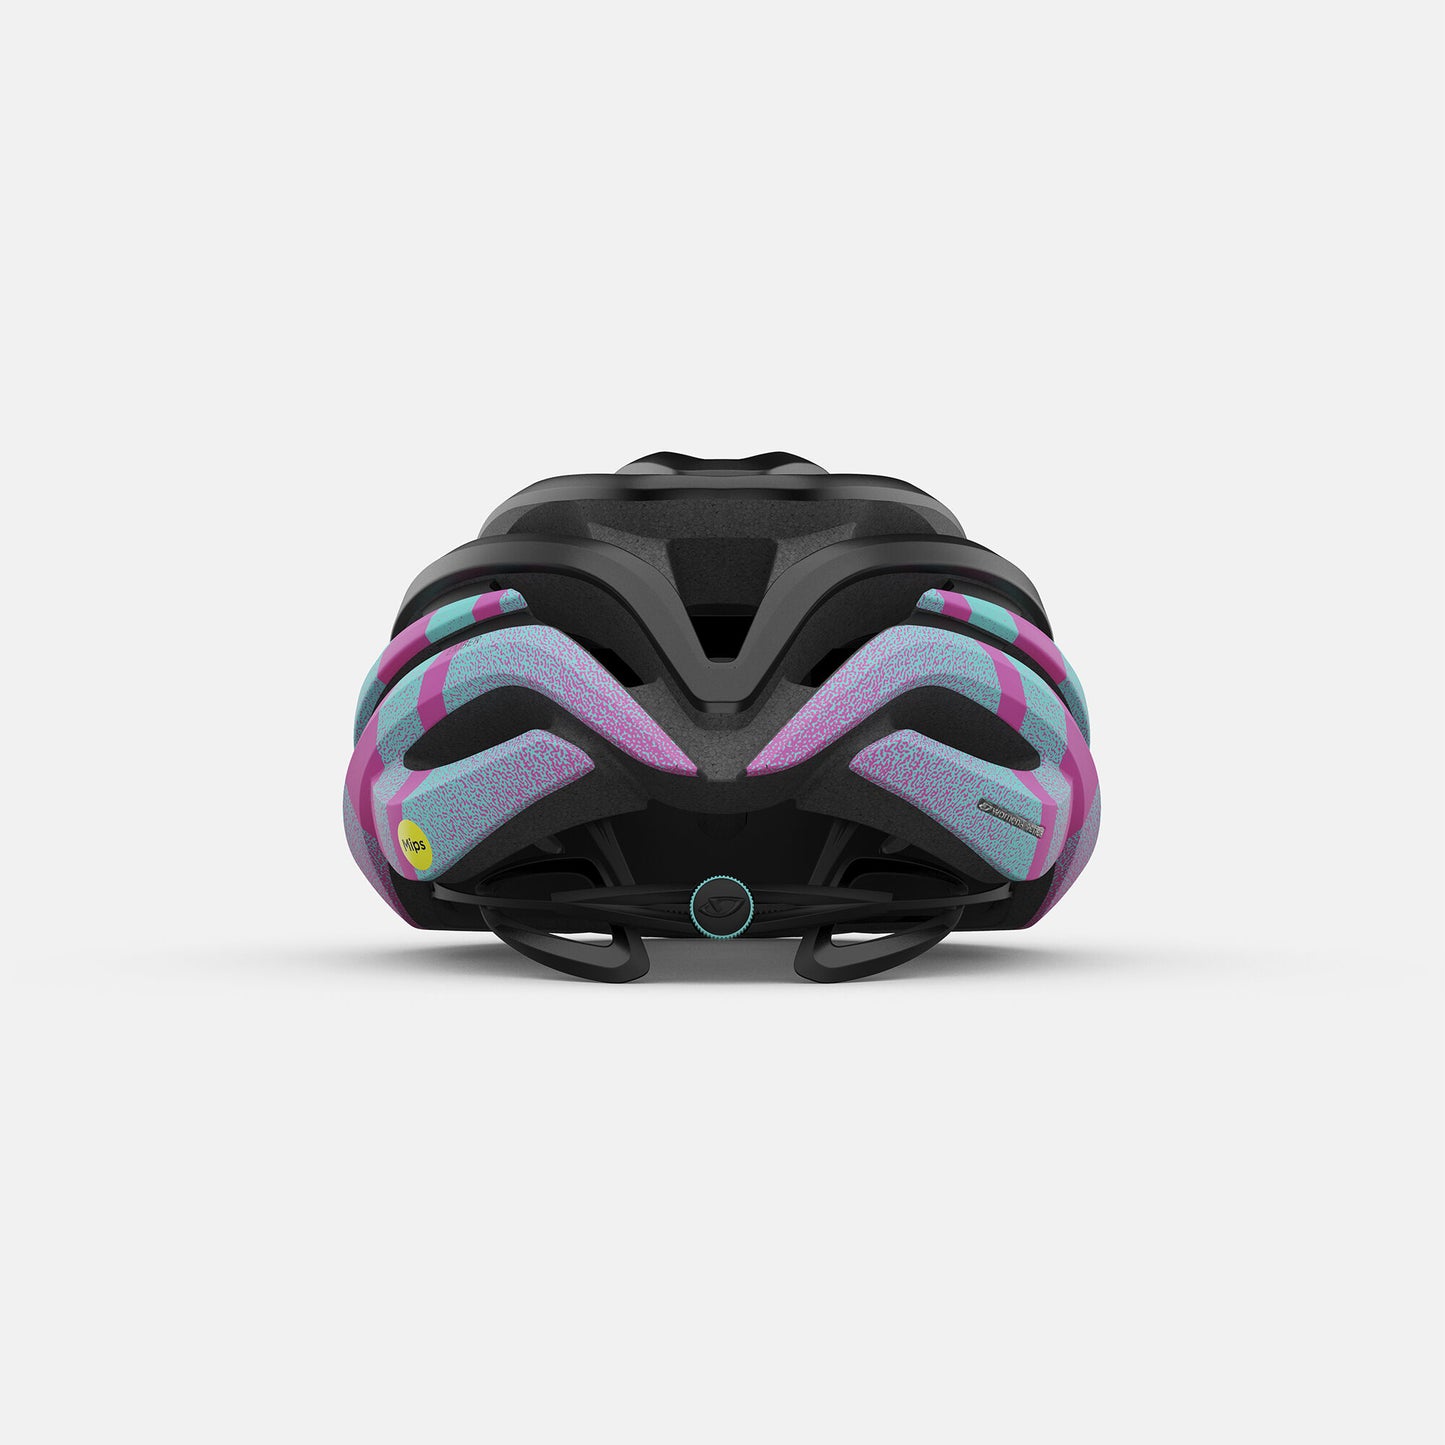 Giro Women's Ember MIPS Helmet Matte Black Degree Bike Helmets